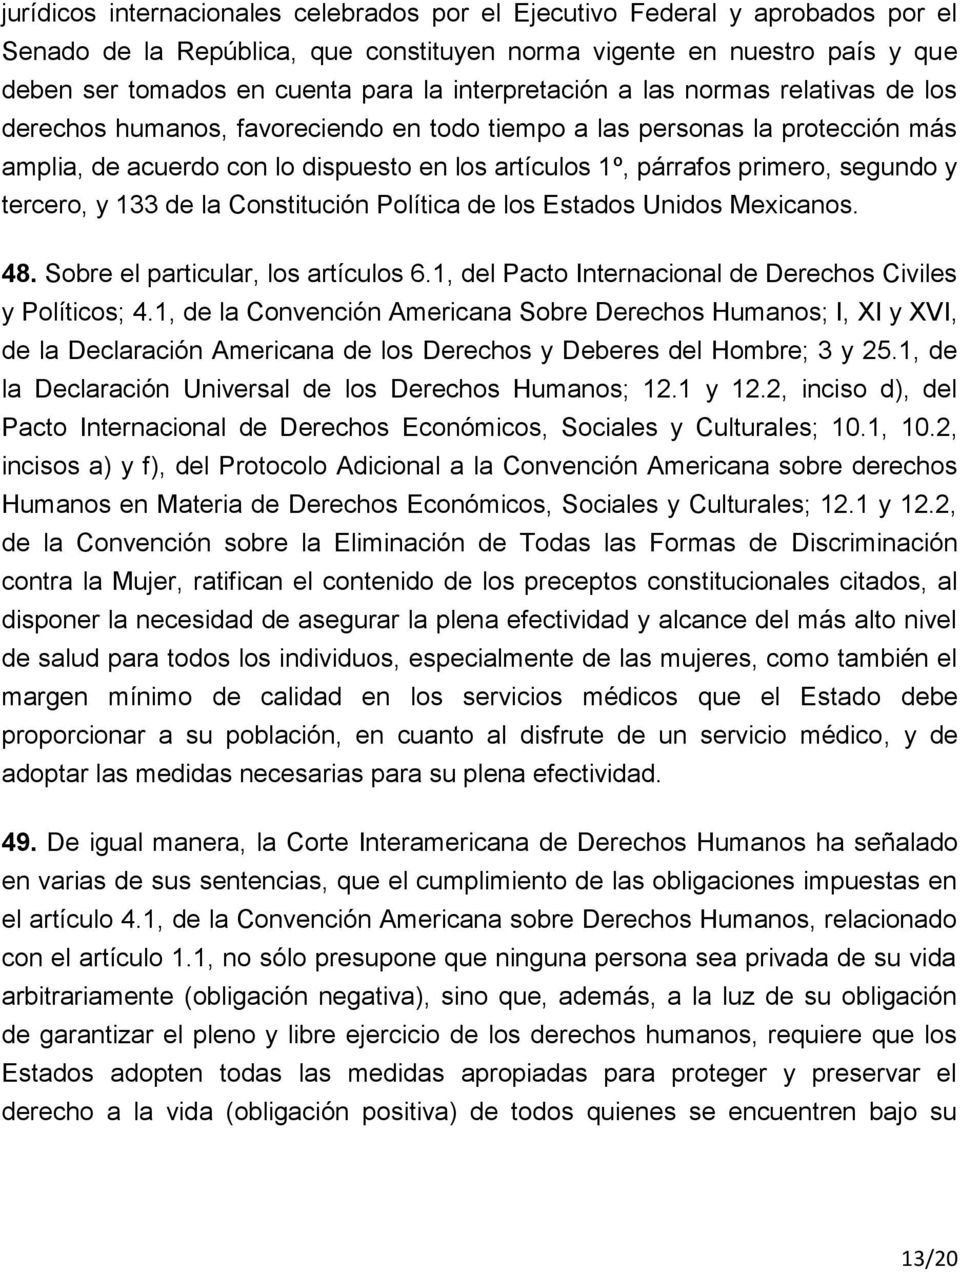 segundo y tercero, y 133 de la Constitución Política de los Estados Unidos Mexicanos. 48. Sobre el particular, los artículos 6.1, del Pacto Internacional de Derechos Civiles y Políticos; 4.